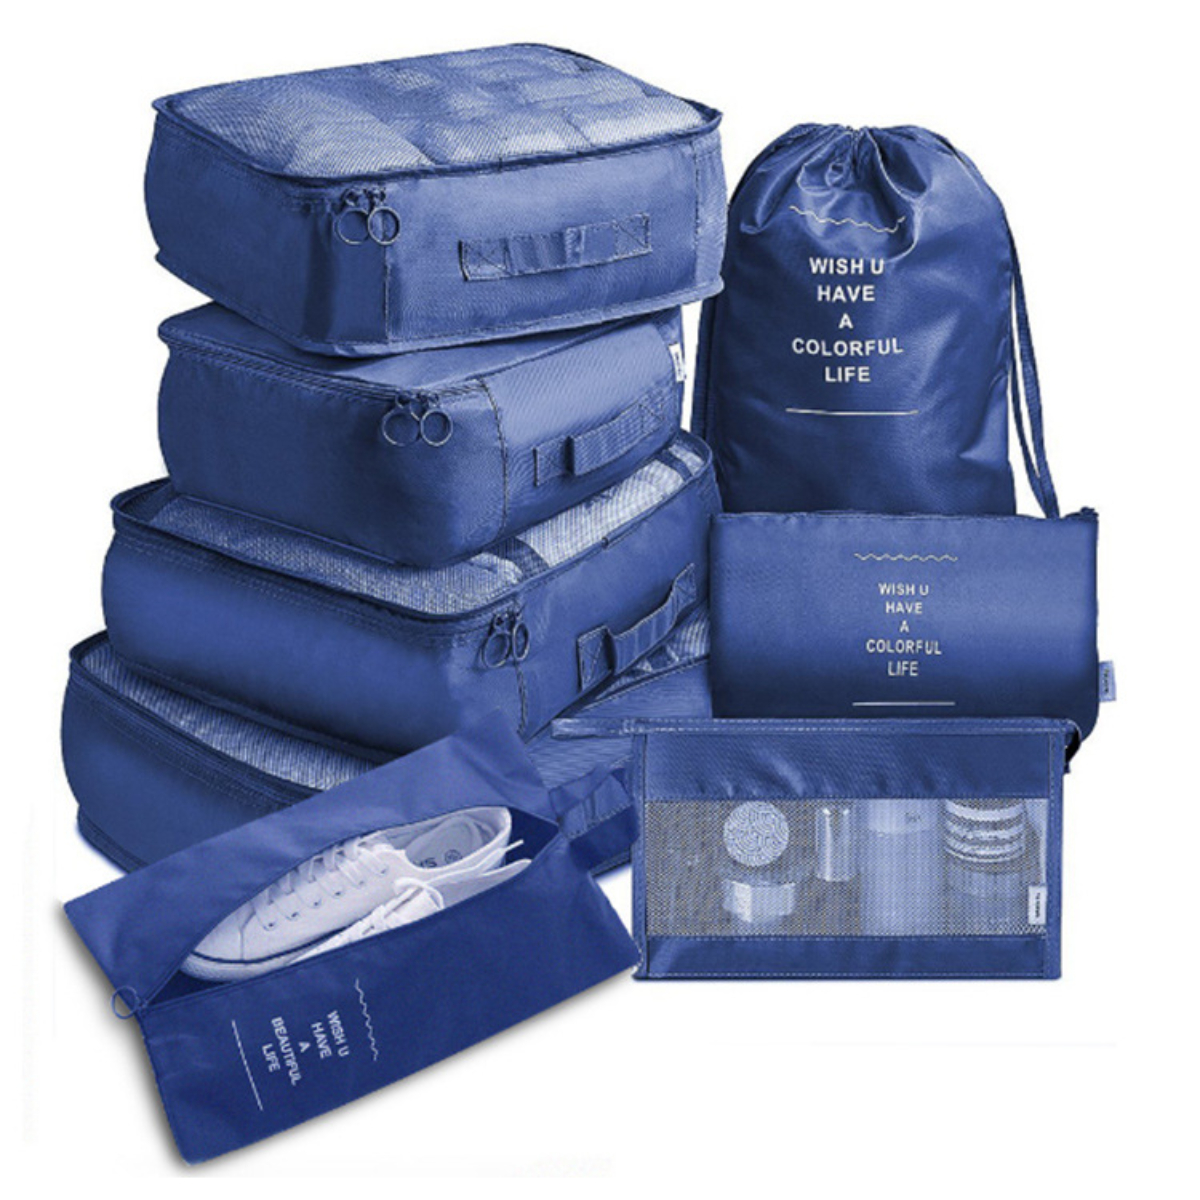 SYNTEK Organizer Set Blau Bag Travel Organizer Sorting 8-teilig Travel Clothes Organizer Blau